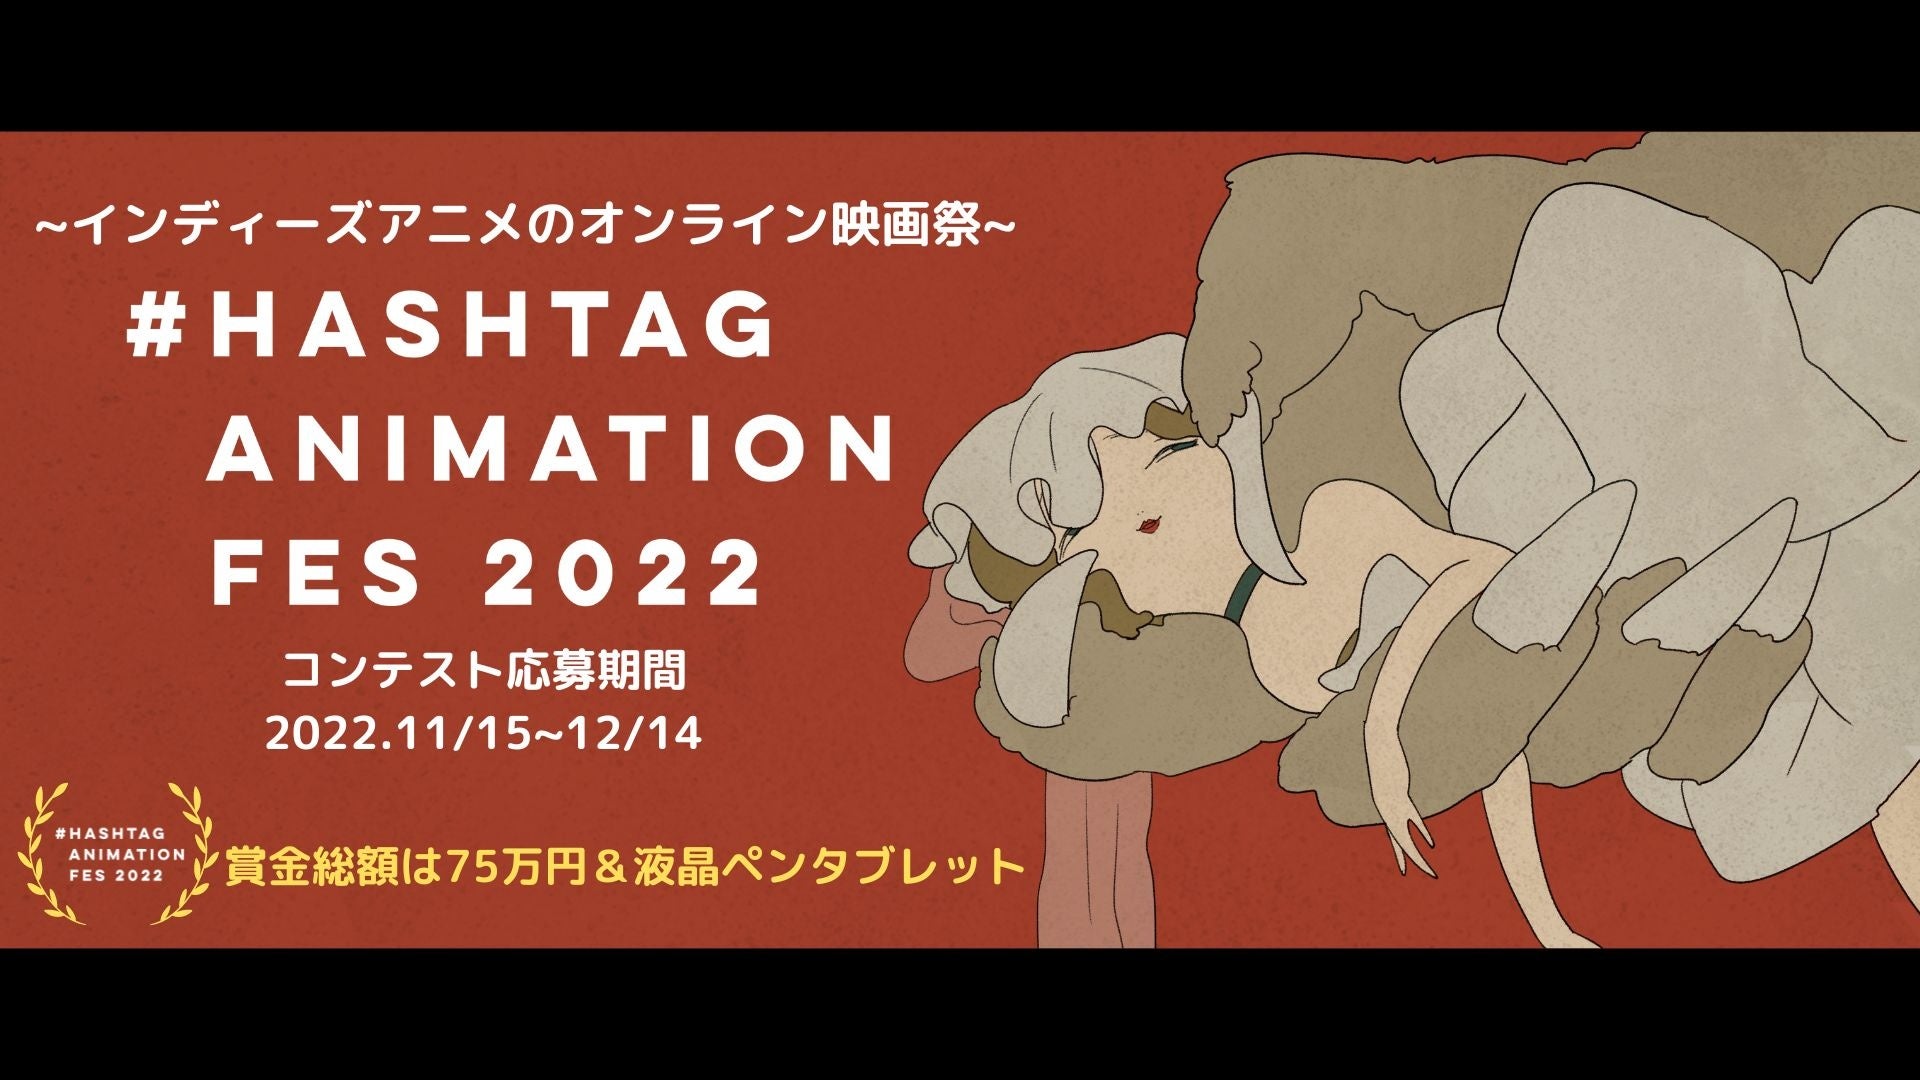 インディーズアニメクリエイターのための映画祭『＃Hashtag Animation Fes 2022』を開催